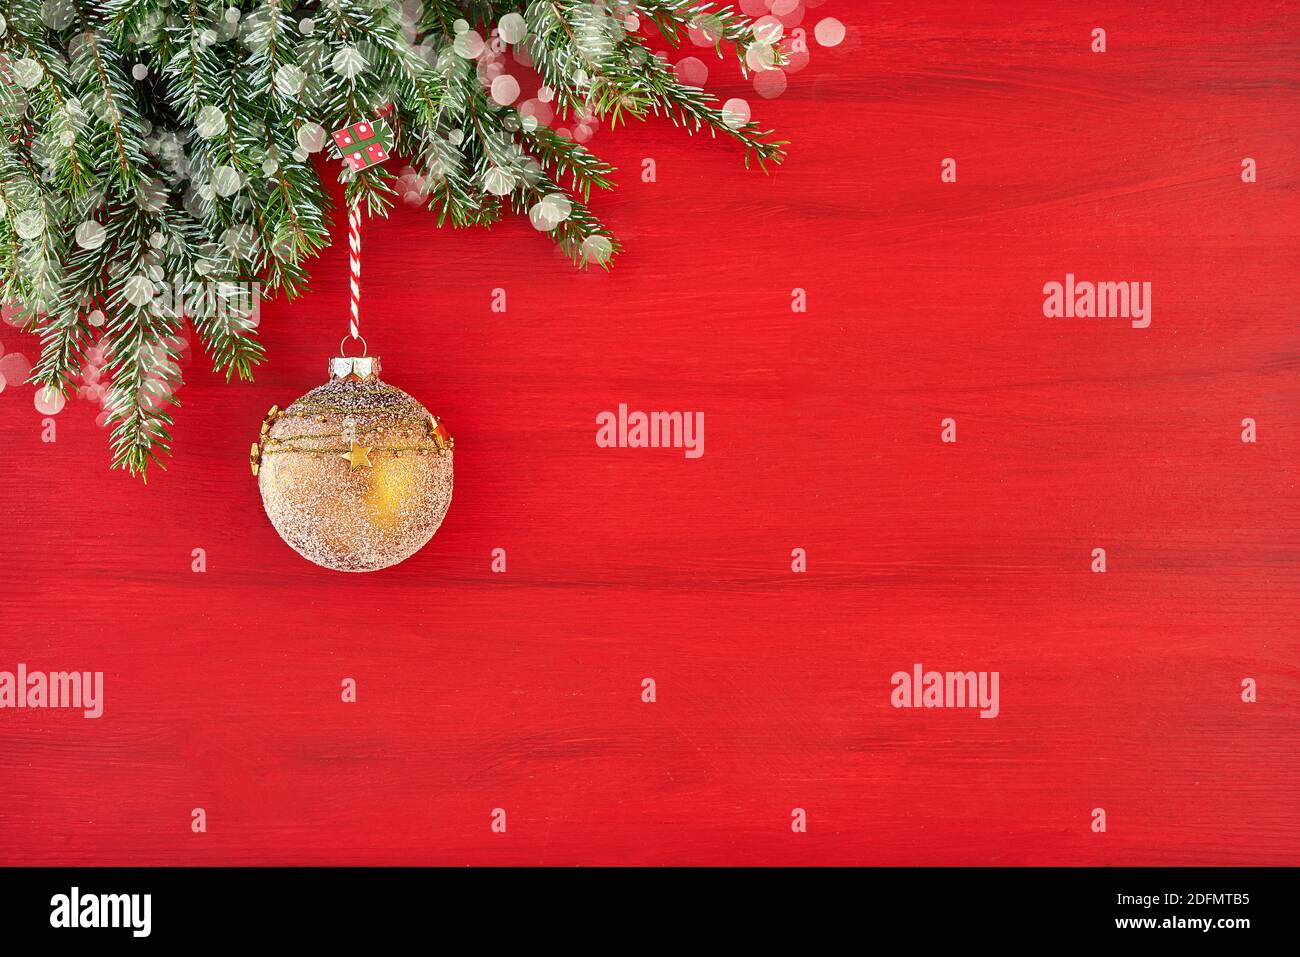 Weihnachtskarte. Tannenzweig mit gelber Verzierung. Rote Weihnachten Hintergrund. Platz kopieren, Schneetextur. Stockfoto